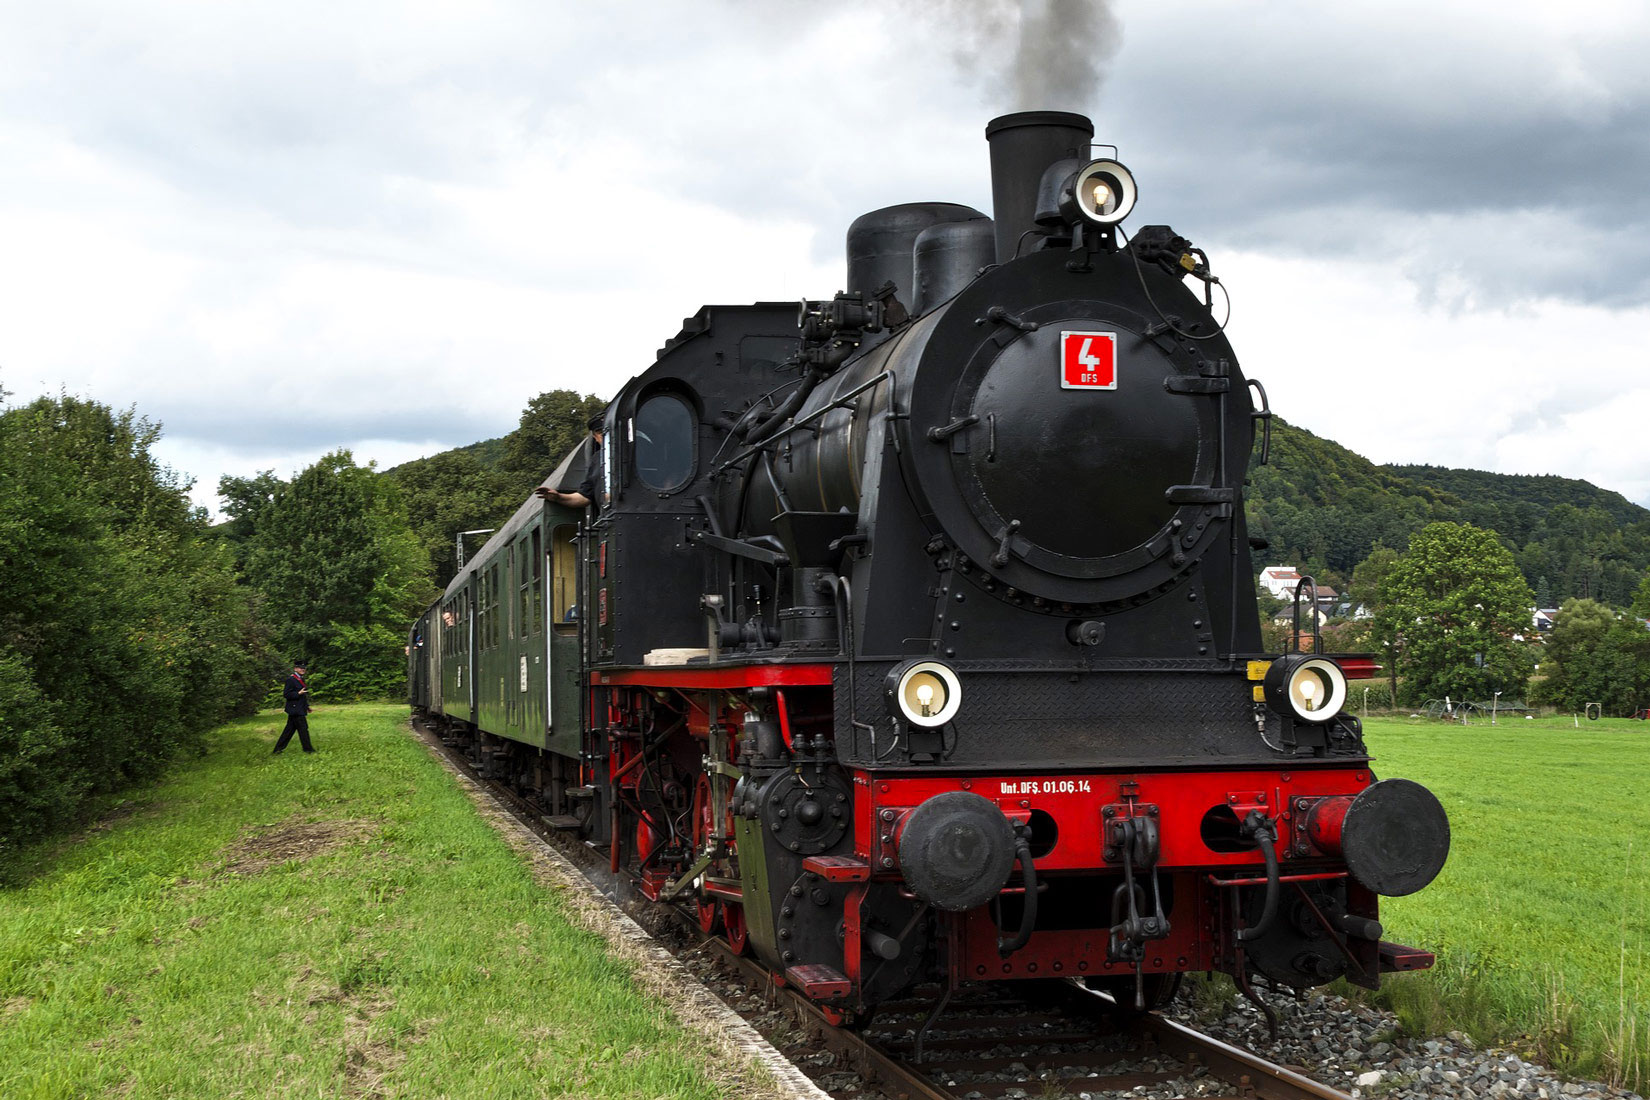 Fotografija prikazuje parnu lokomotivu , uslikanu s prednje strane. Lokomotiva je crno-crvene boje. Putuje kroz krajobraz u kojem se vidi livada i stabla.